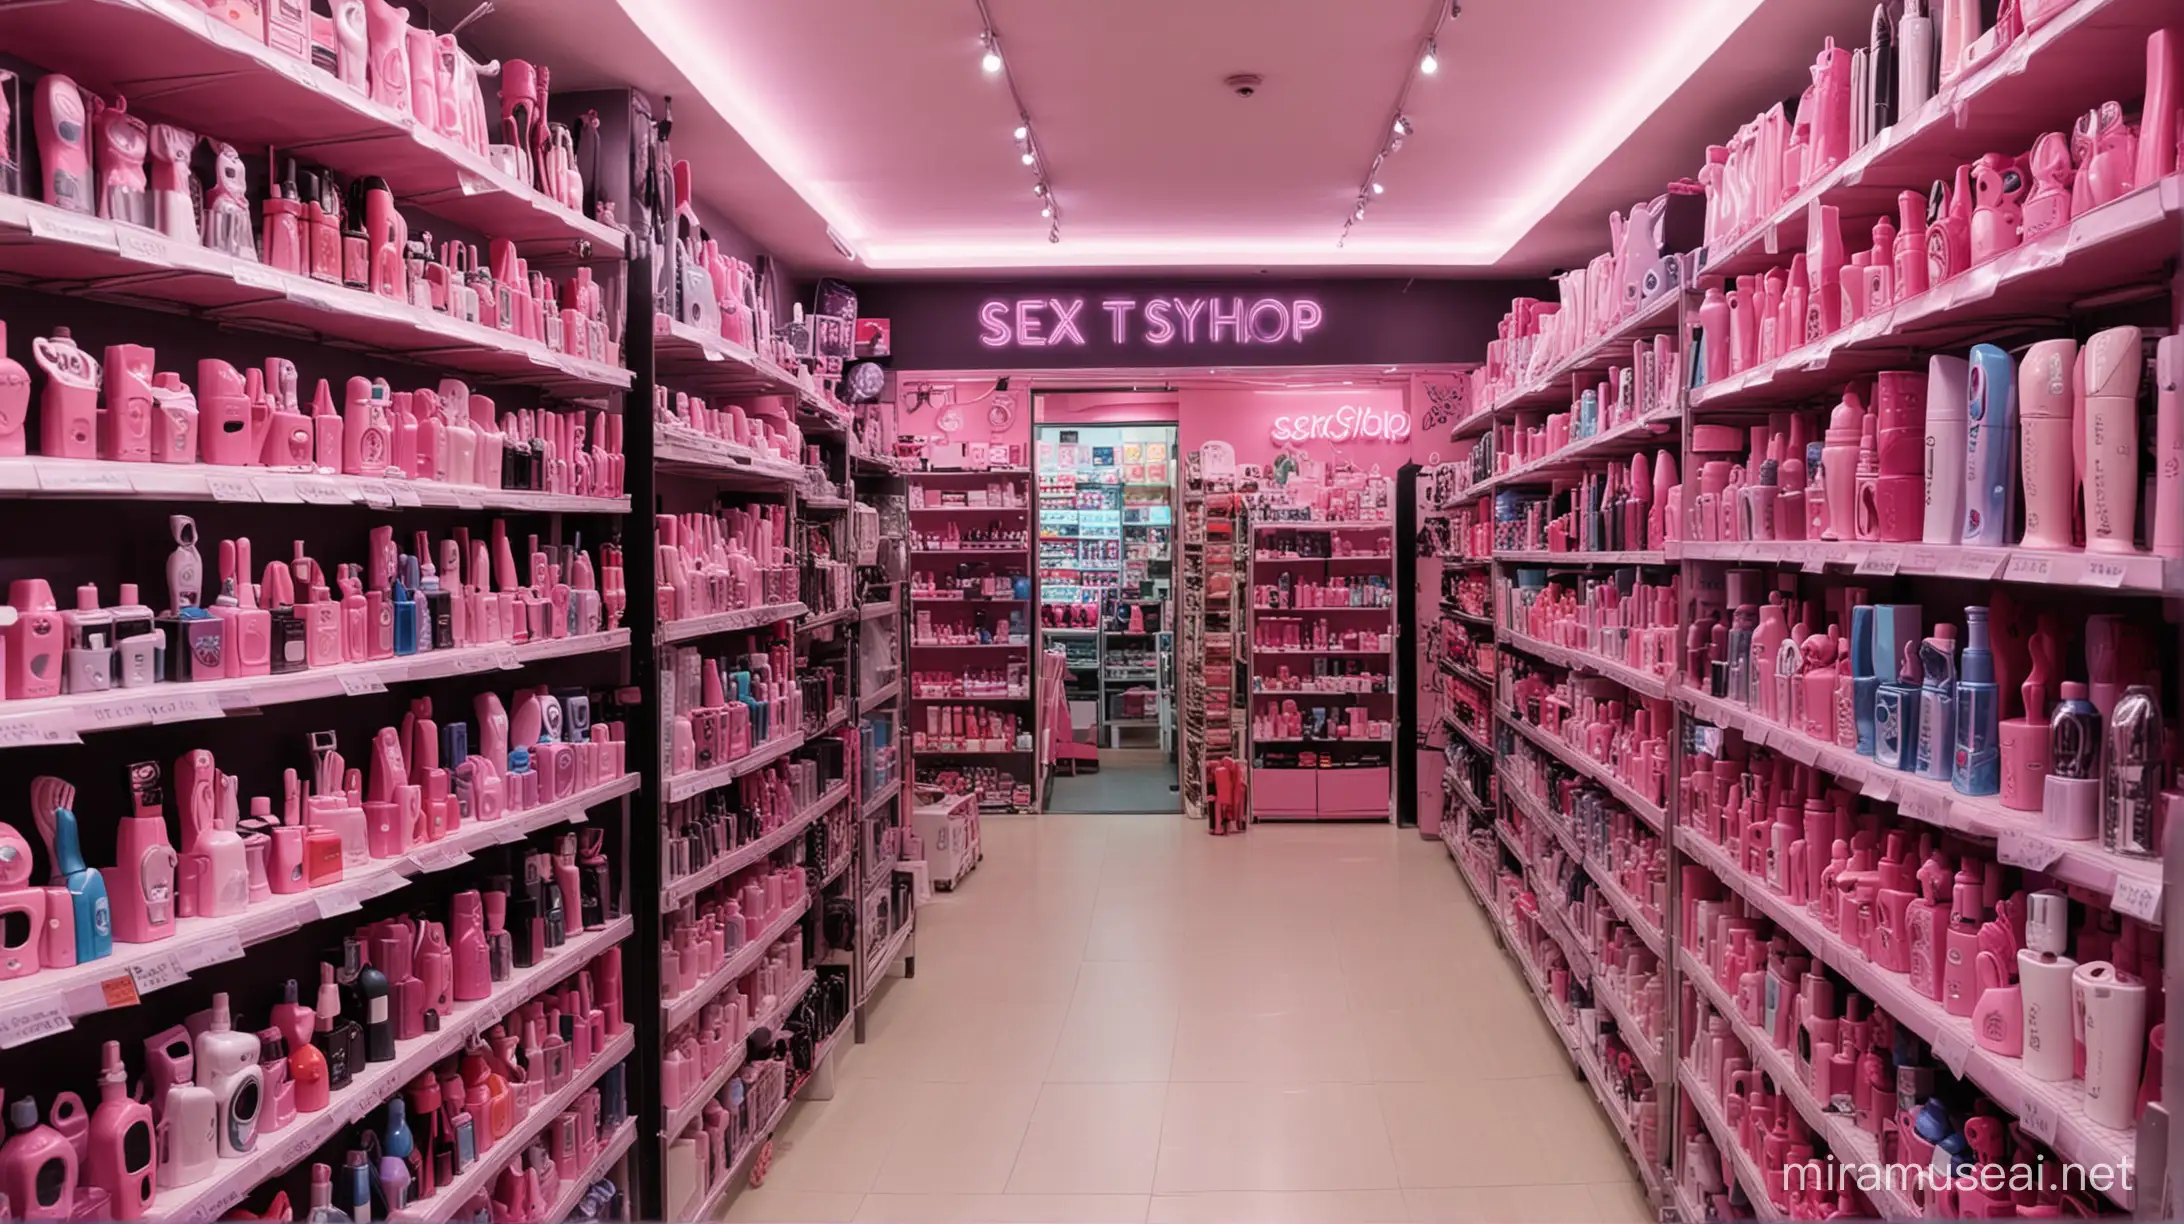 l'intérieur d'un sex shop, on voit différents sextoys